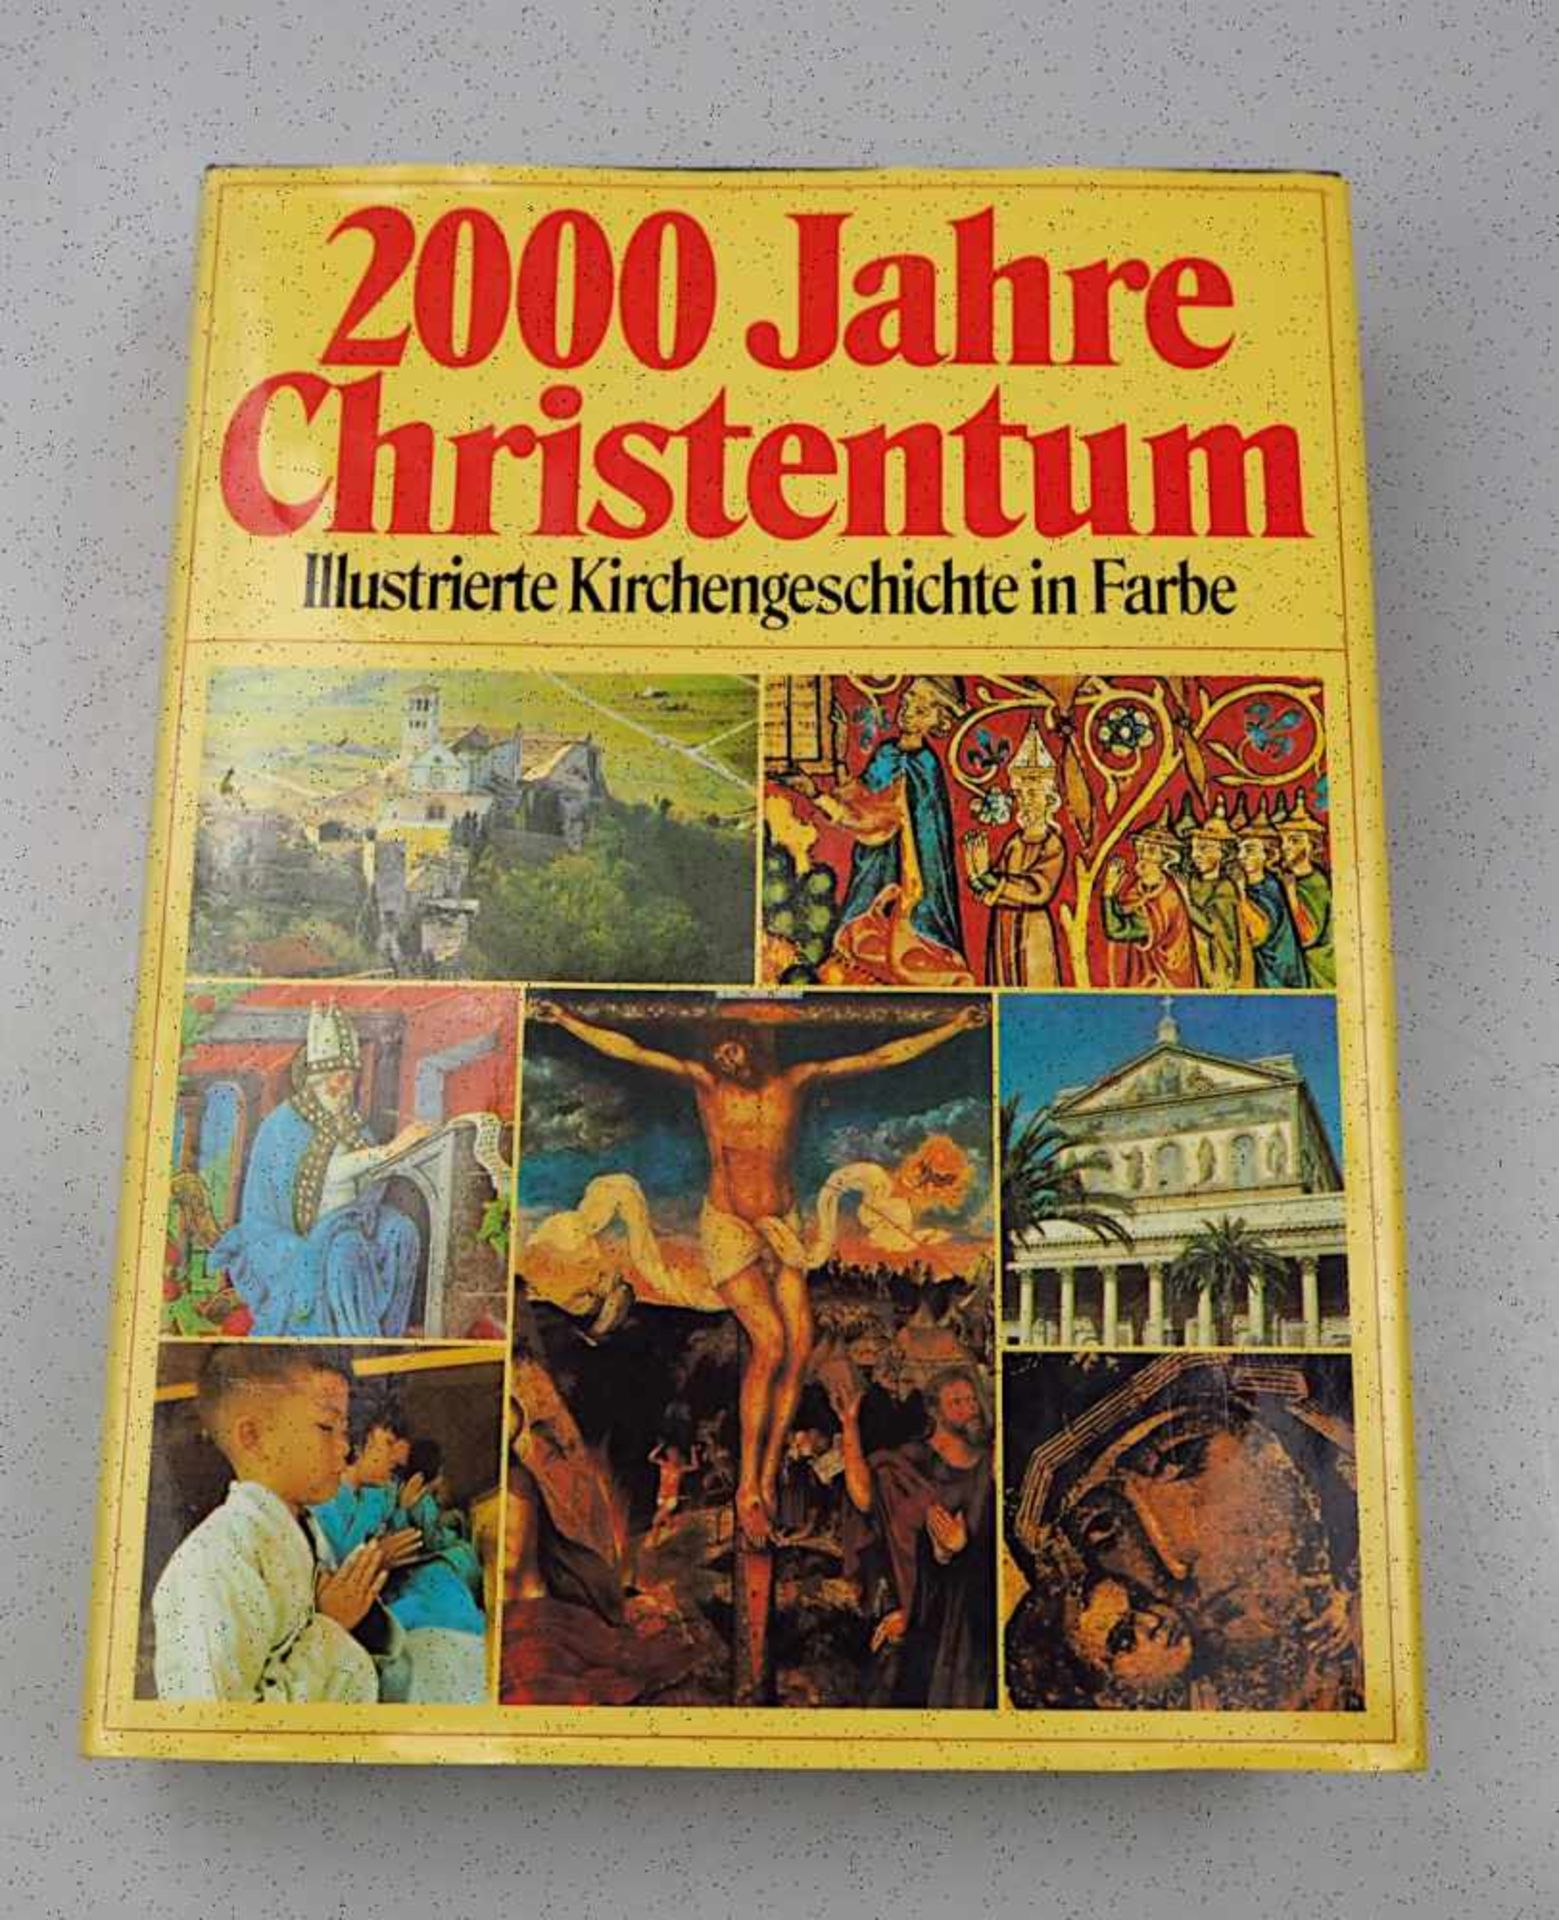 1 Buch "2000 Jahre Christentum. Illustrierte Kirchengeschichte in Farbe" 20. Jh ber. Asp.